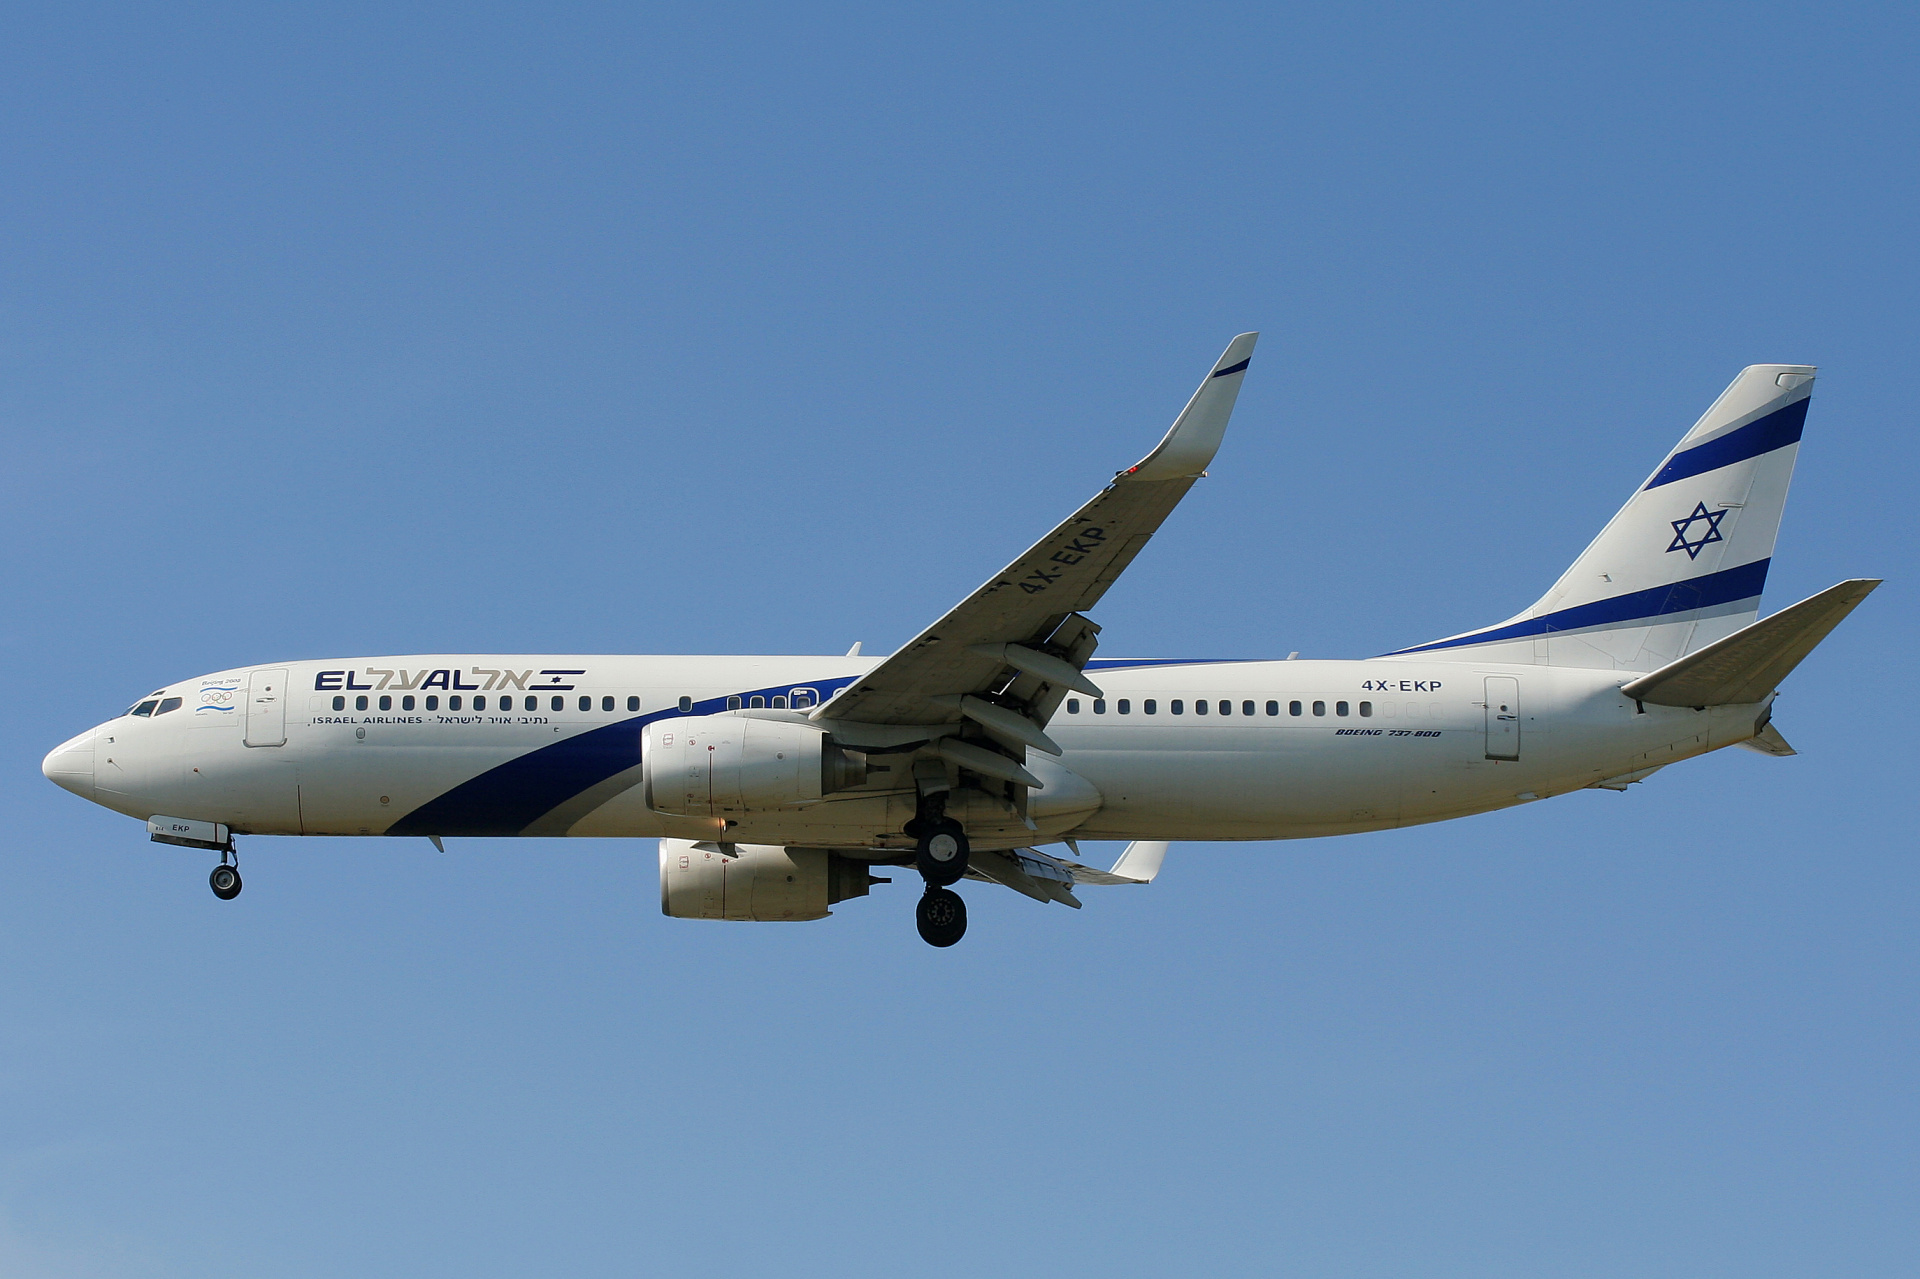 4X-EKP (Beijing 2008 Olympic Games sticker) (Aircraft » EPWA Spotting » Boeing 737-800 » El Al Israel Airlines)